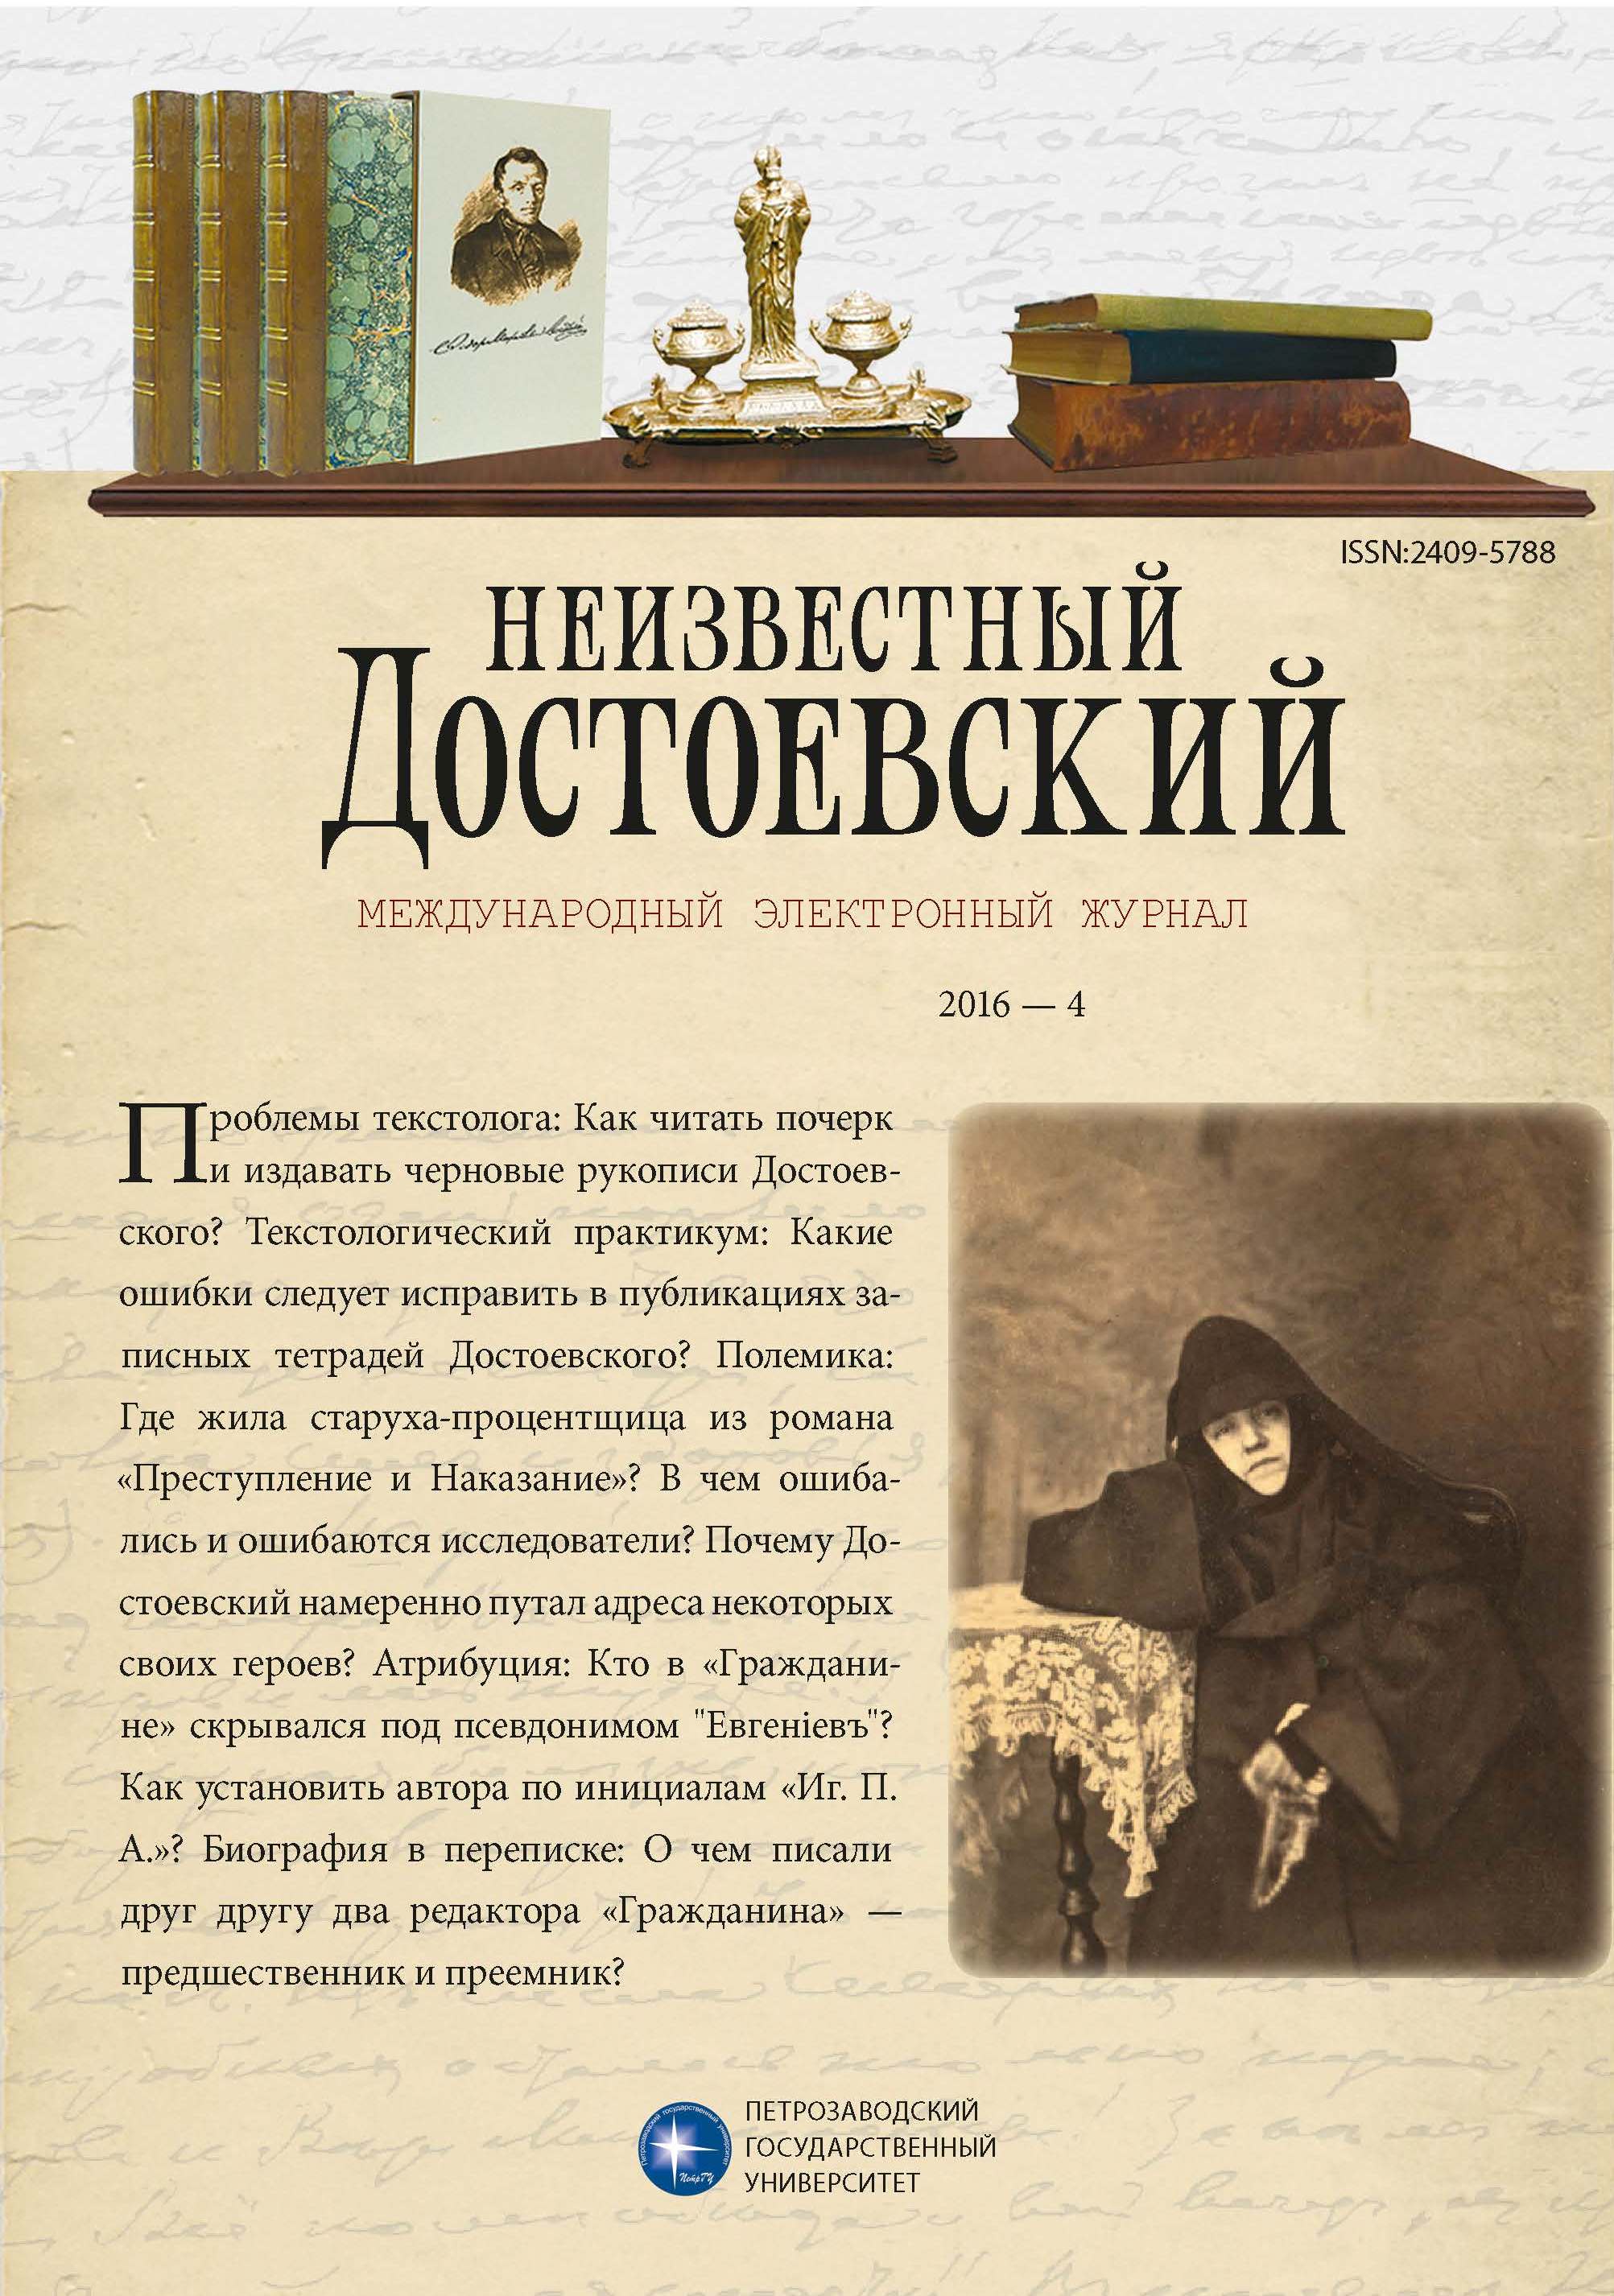 Correspondence of Fyodor Dostoyevsky and V.F. Putsykovich (1873-1880) Cover Image